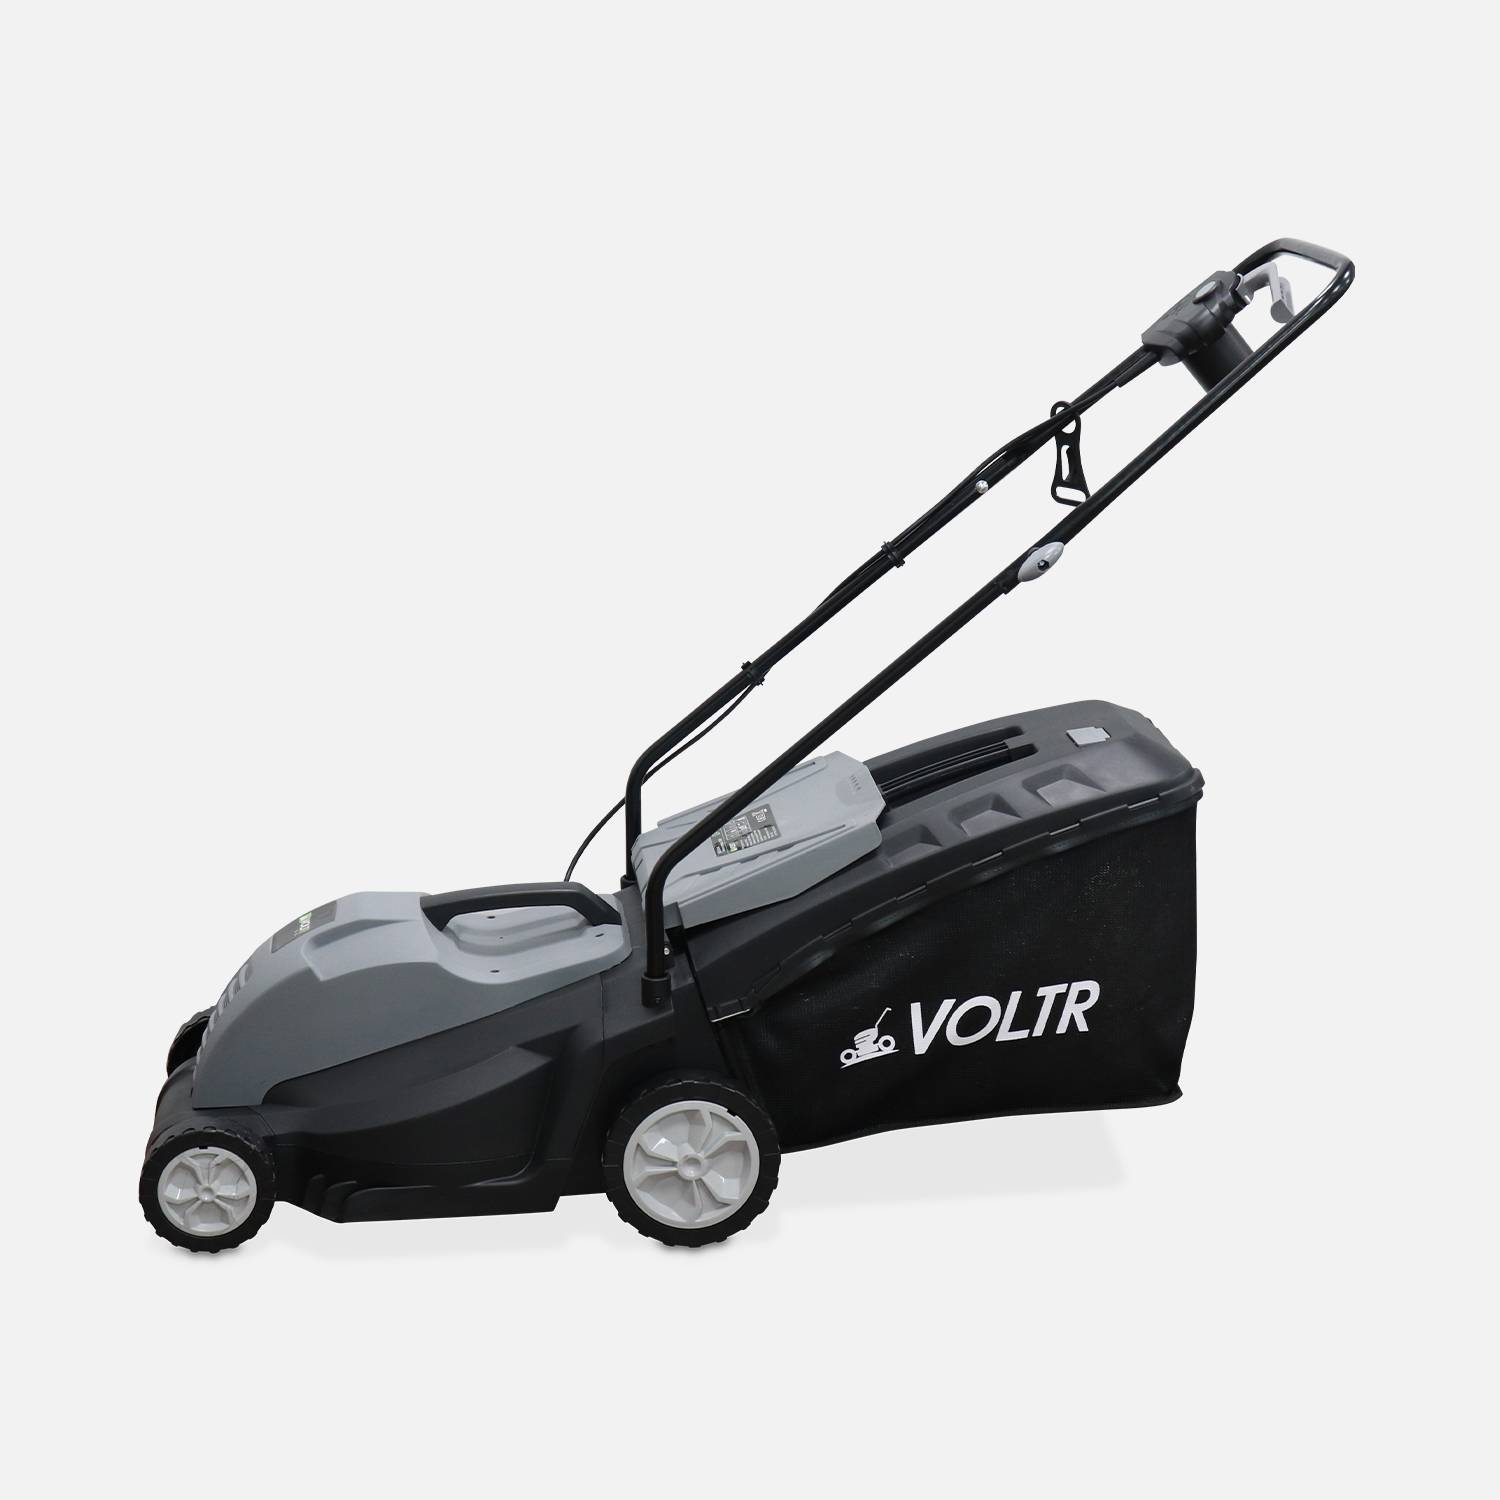 VOLTR - Elektrischer Rasenmäher 1500W – Grasfangkorb 50L, Schnittdurchmesser 36cm, kompakt und handlich Photo3